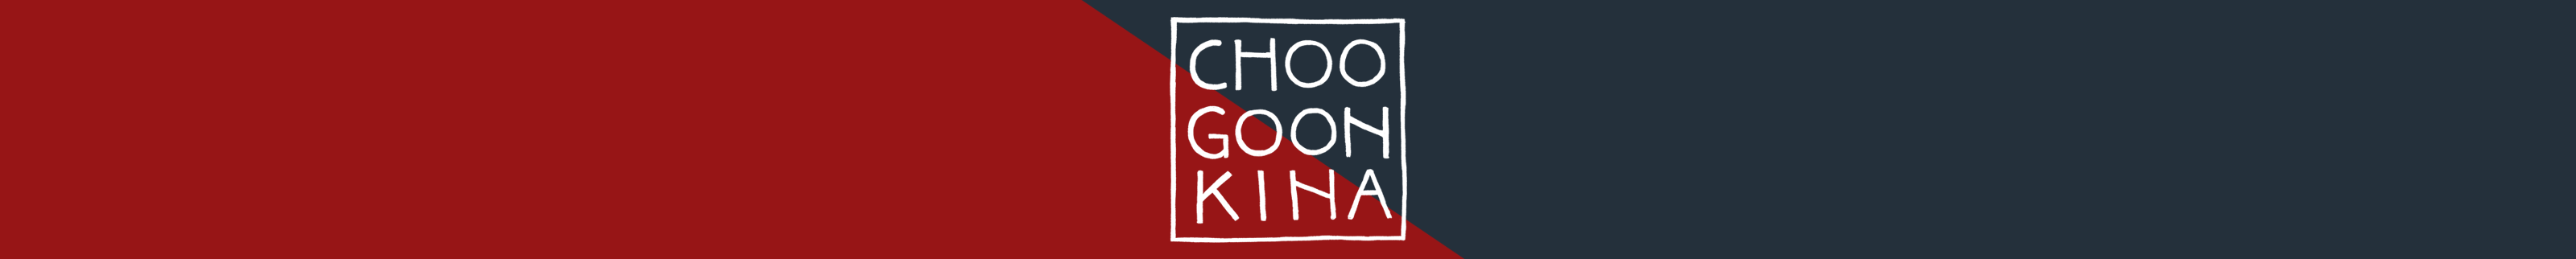 Kato Choogoonkinas profilbanner